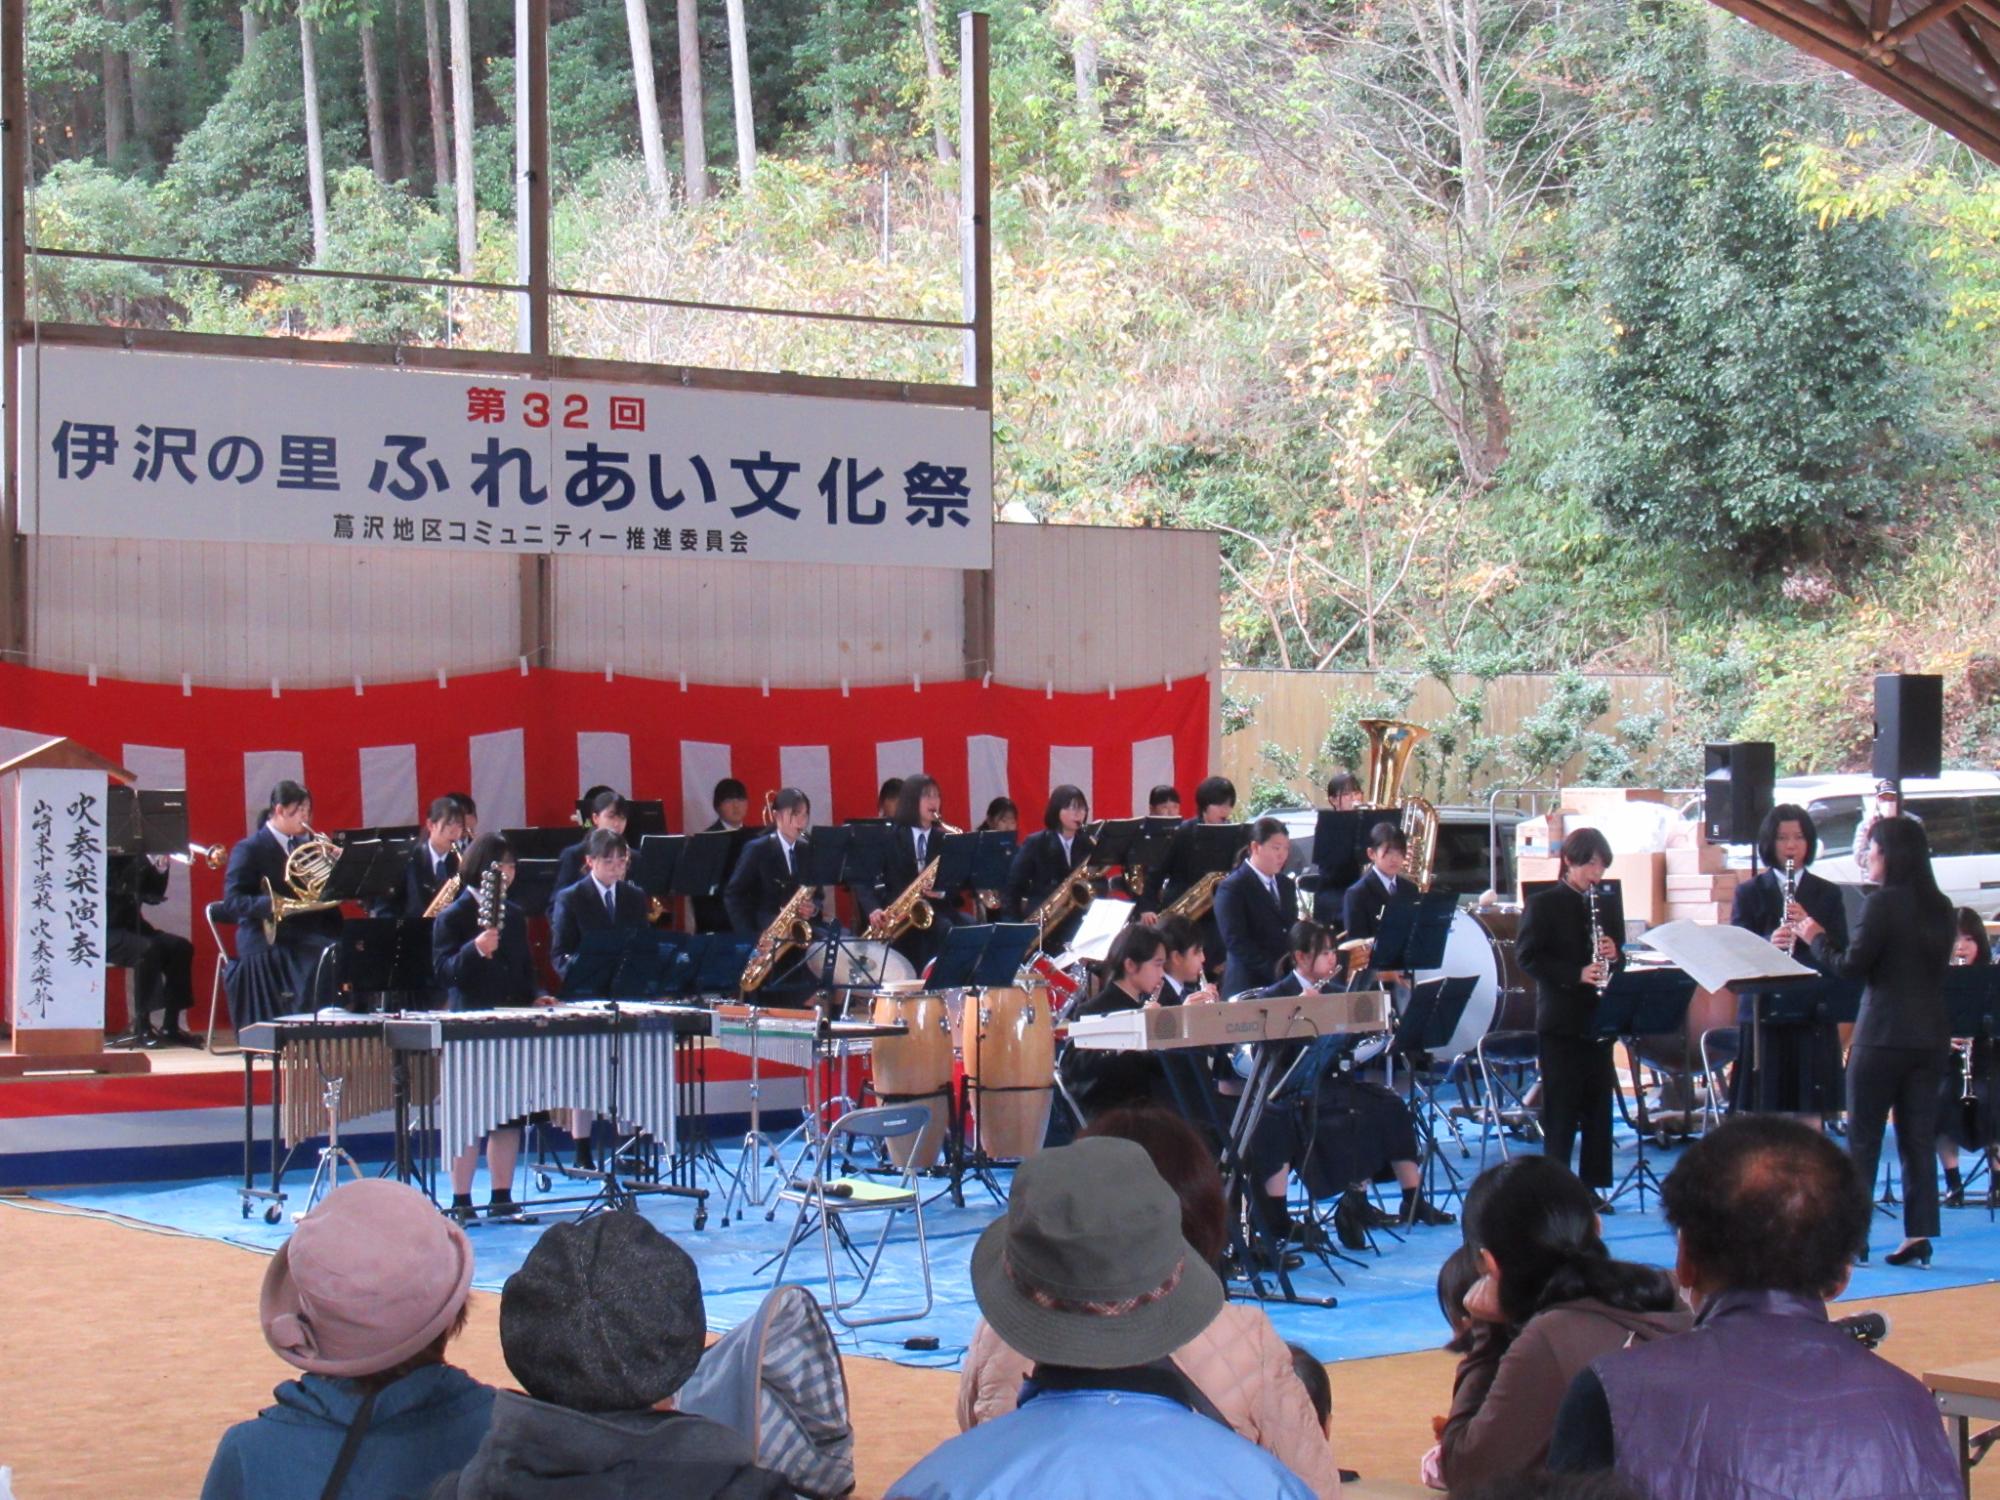 山崎東中学校吹奏楽部がステージで演奏している写真